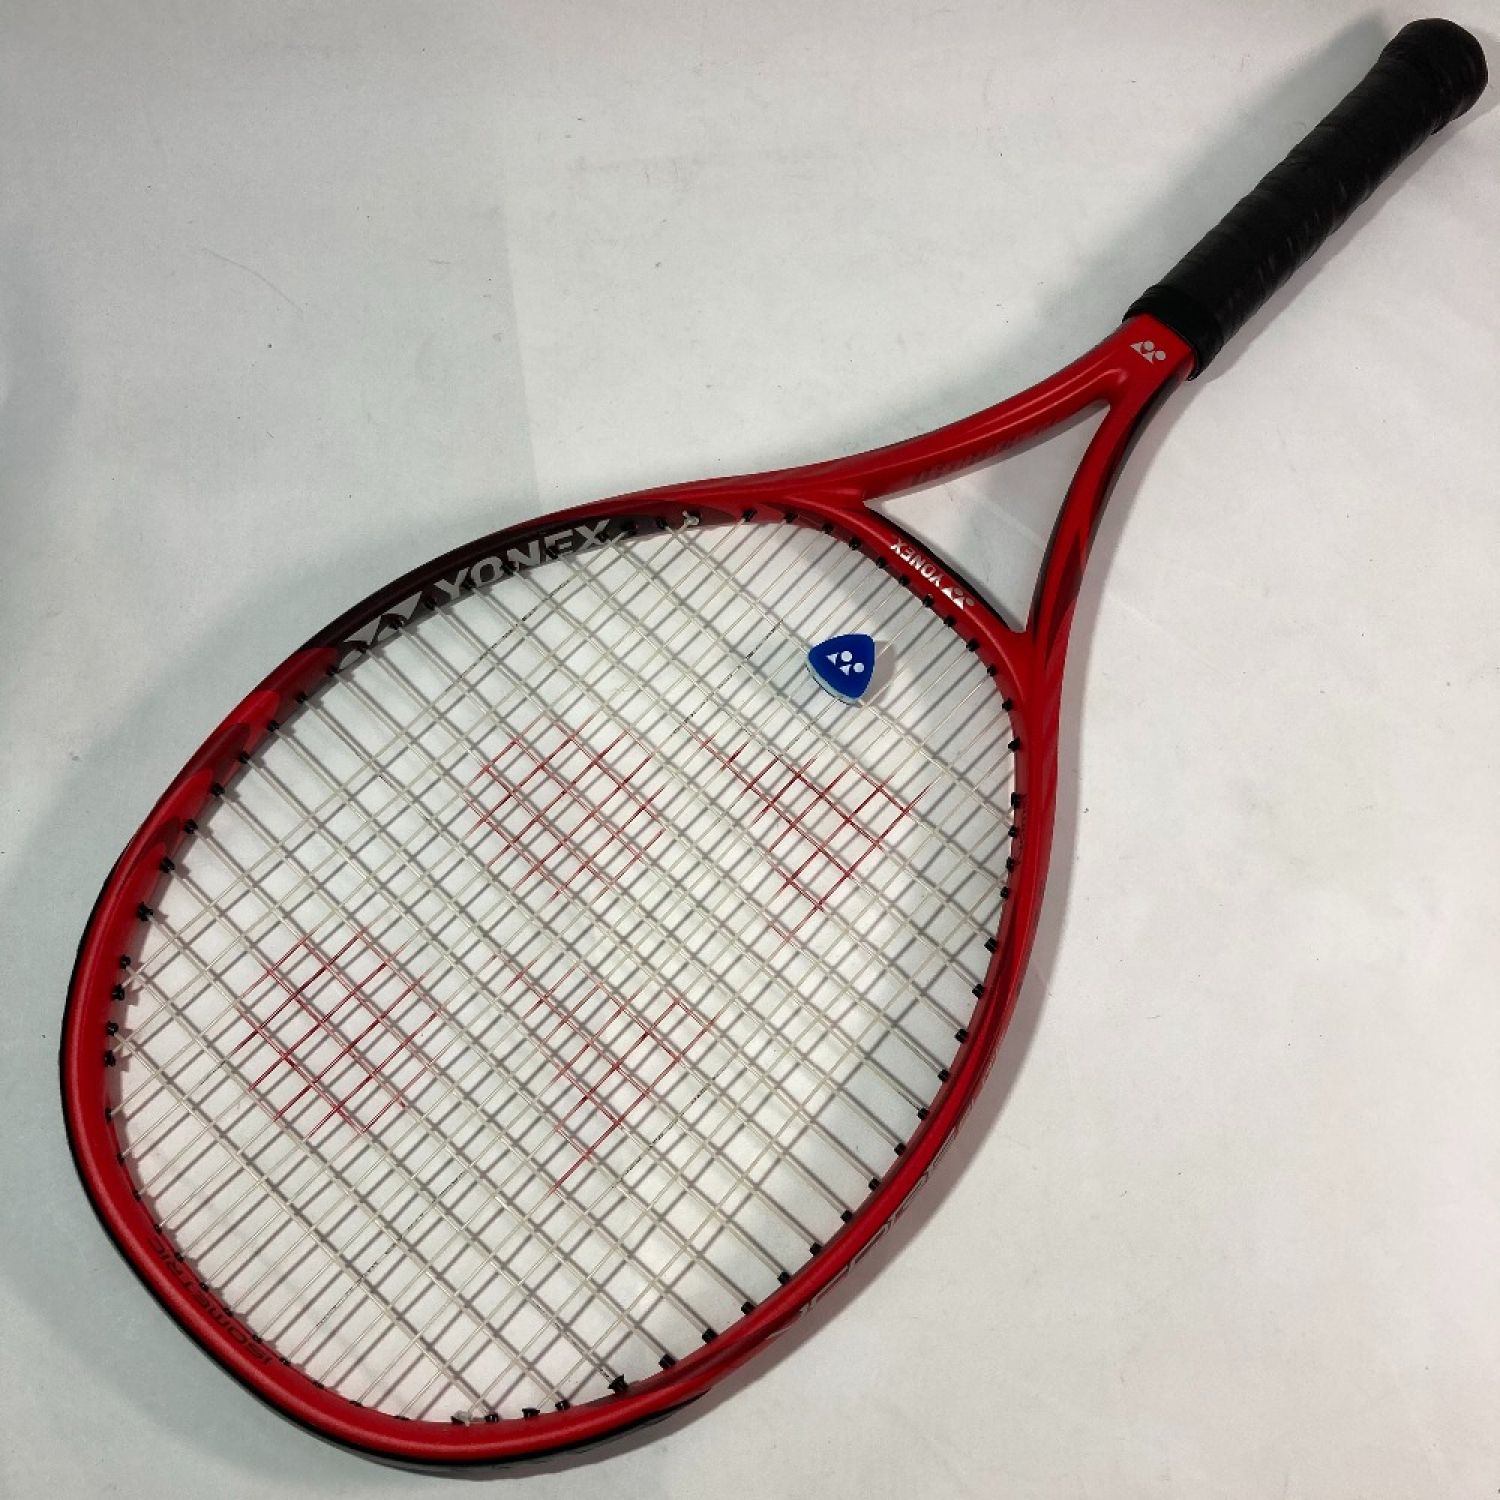 ヨネックス硬式テニスラケットVコアエリート2021 - ラケット(硬式用)